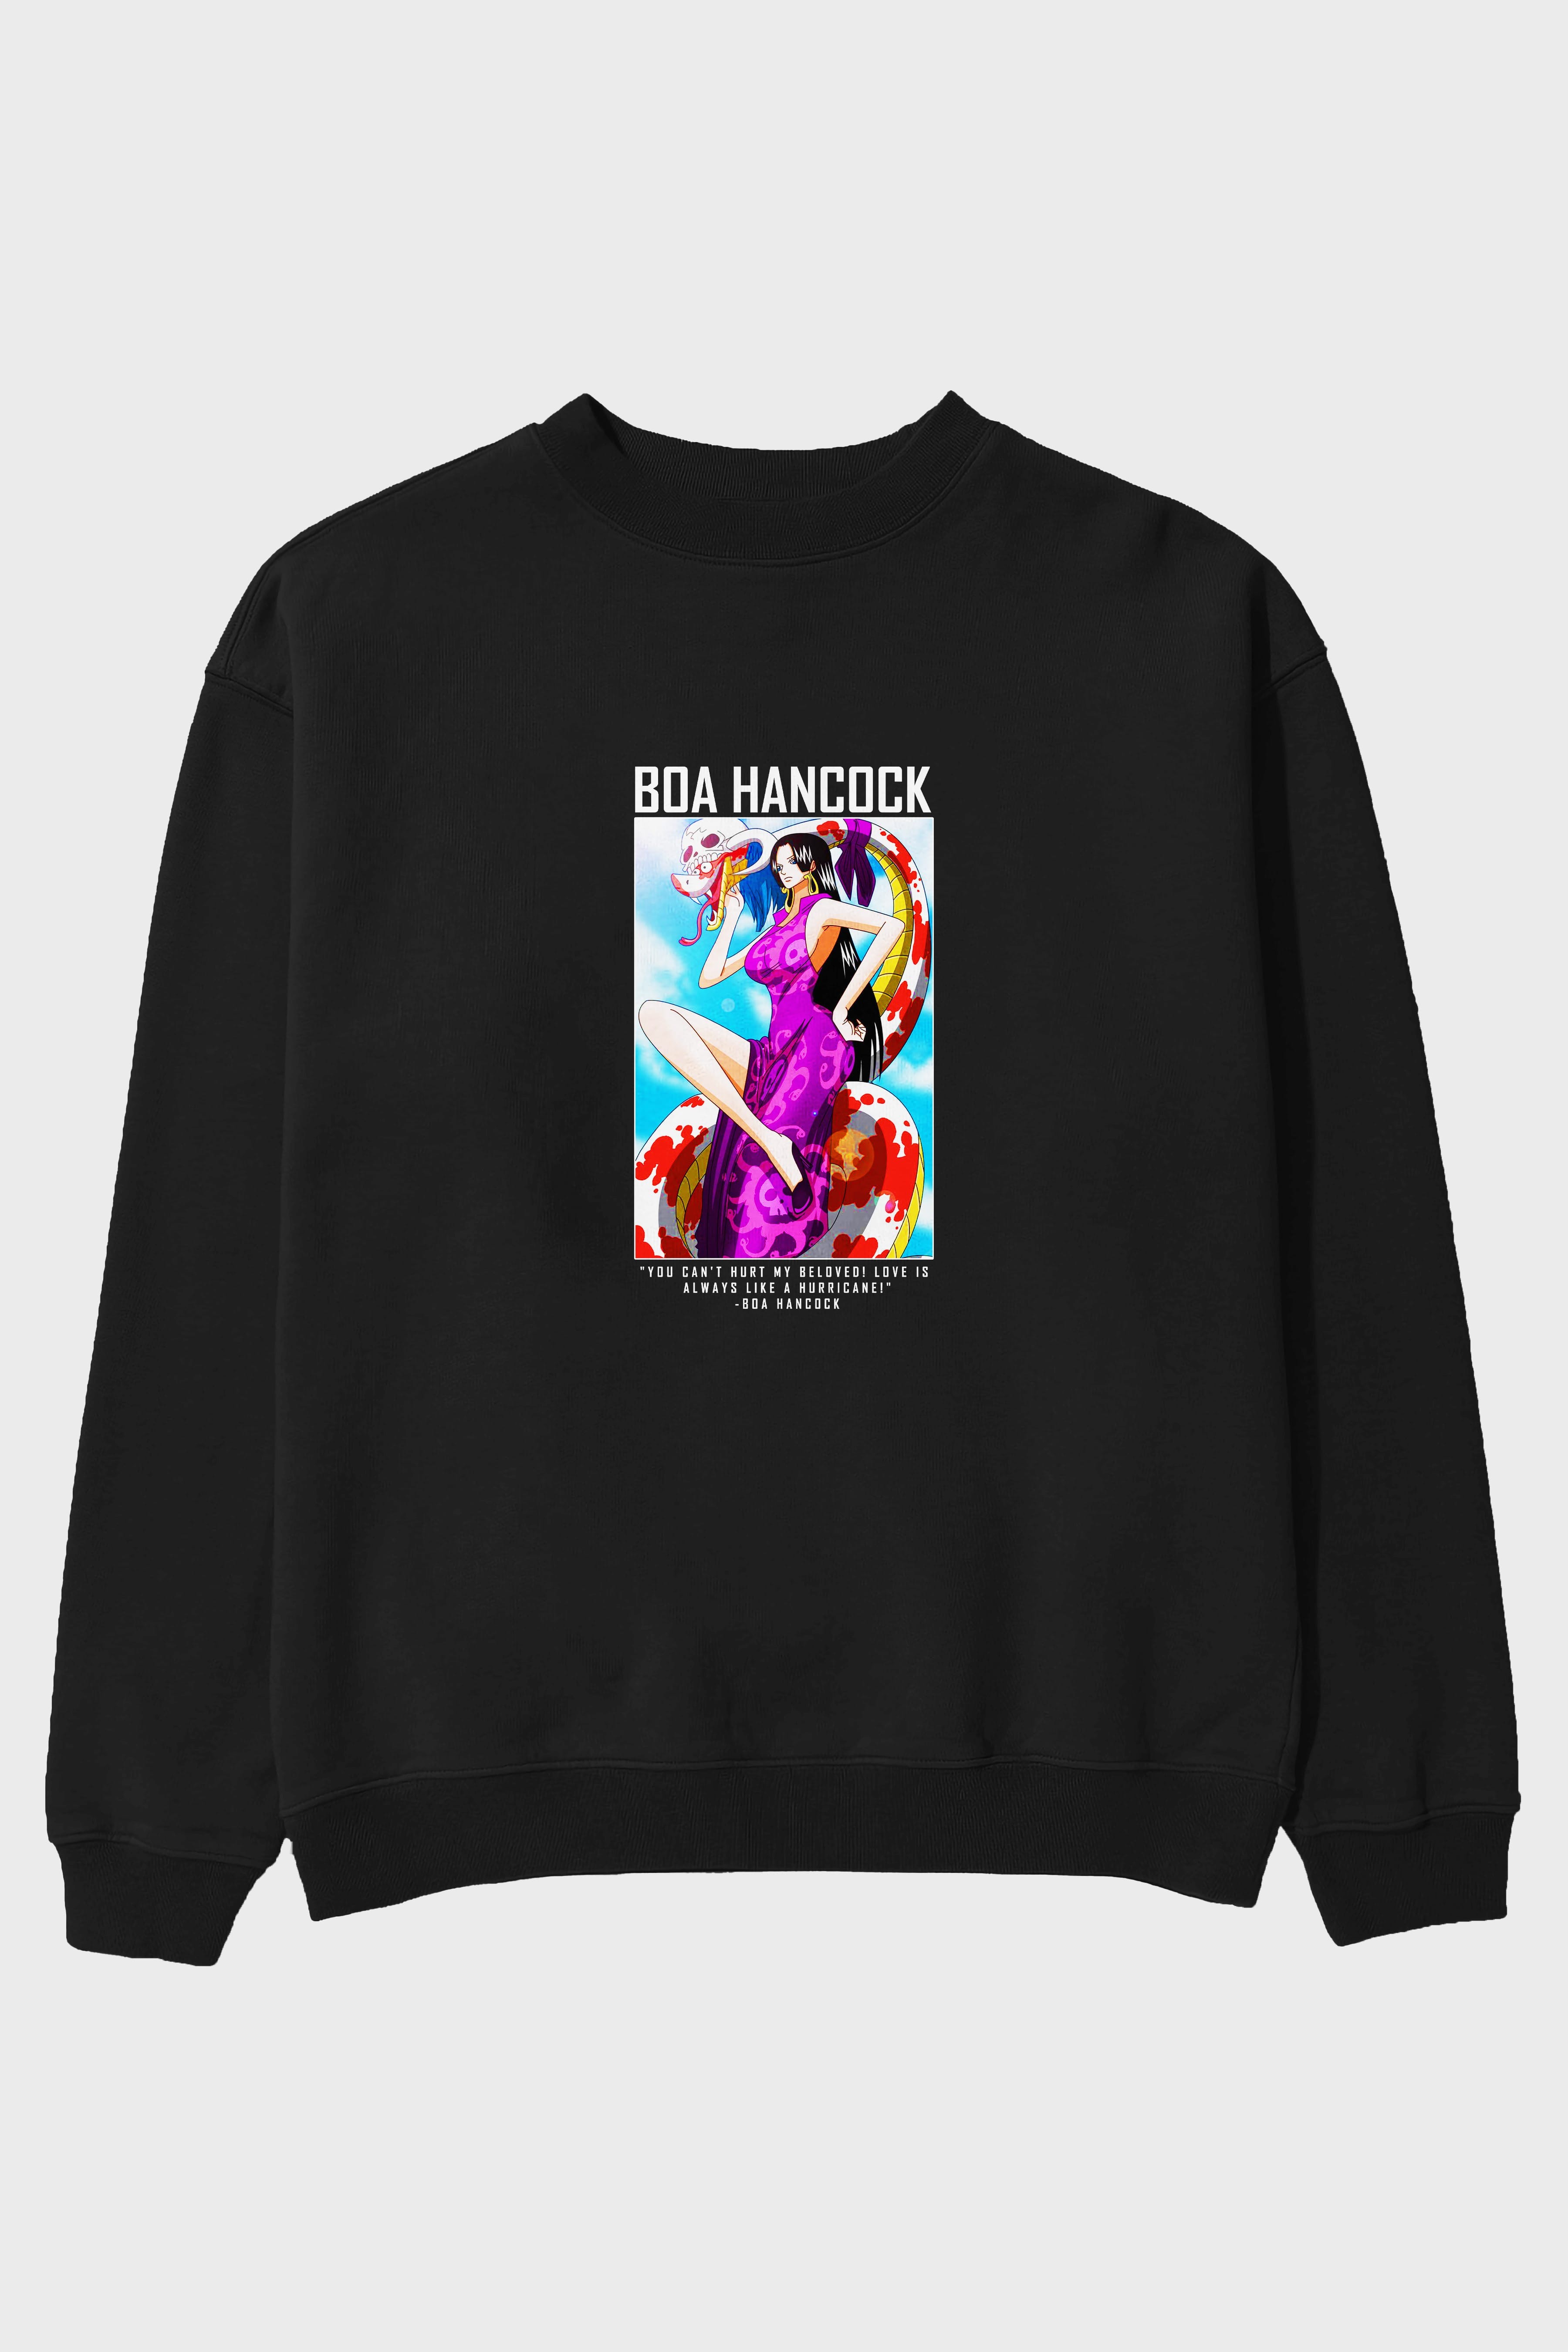 Boa Hancock Ön Baskılı Anime Oversize Sweatshirt Erkek Kadın Unisex